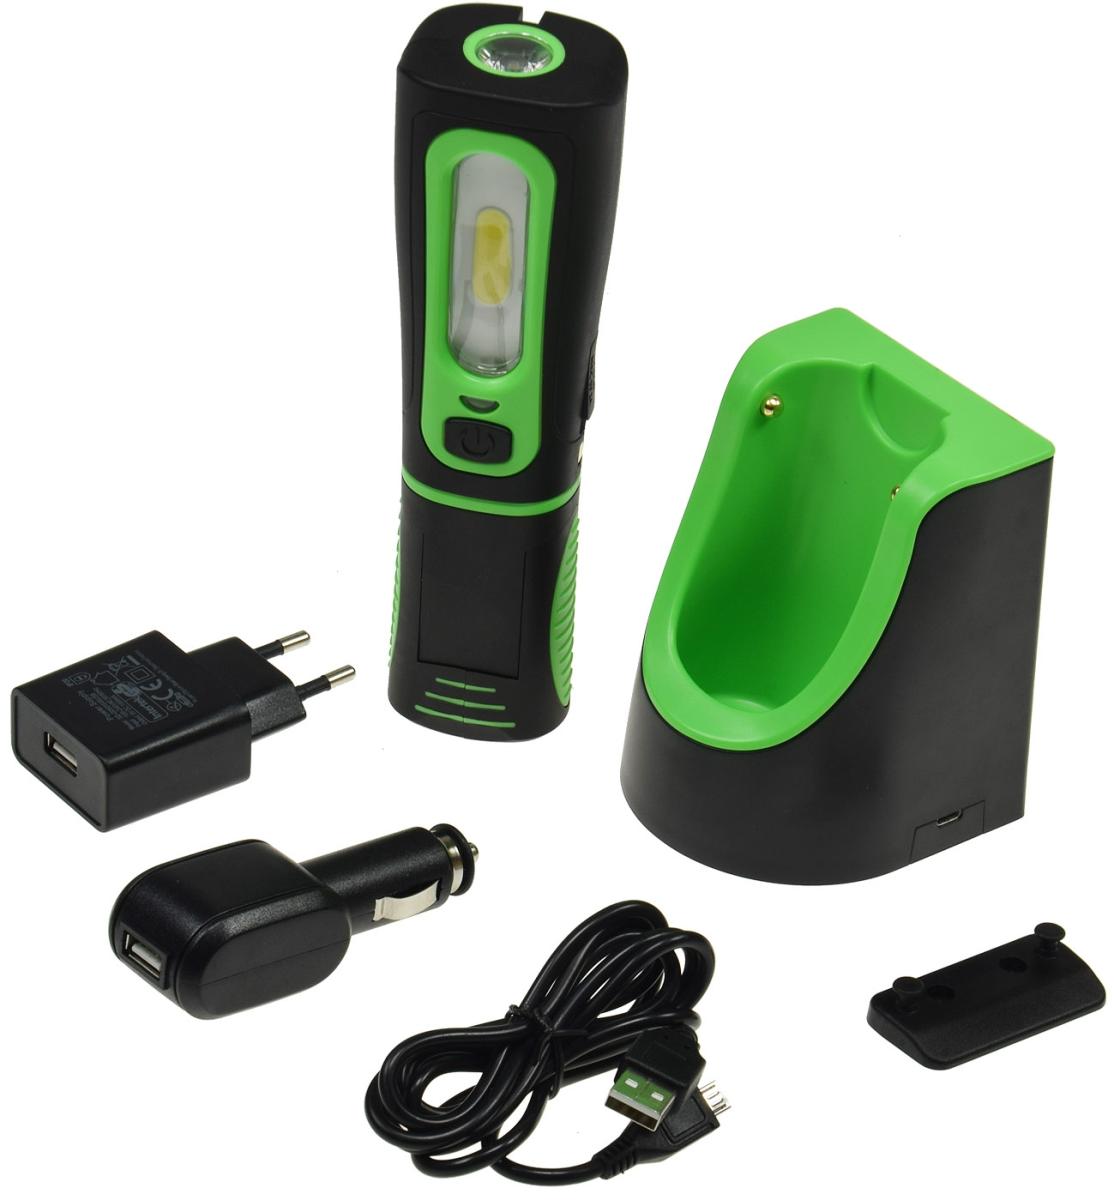 E44-Lampe de poche à led avec chargeur de batterie, support magnétique, 3w,  250lm, ip44 à 39,00 €